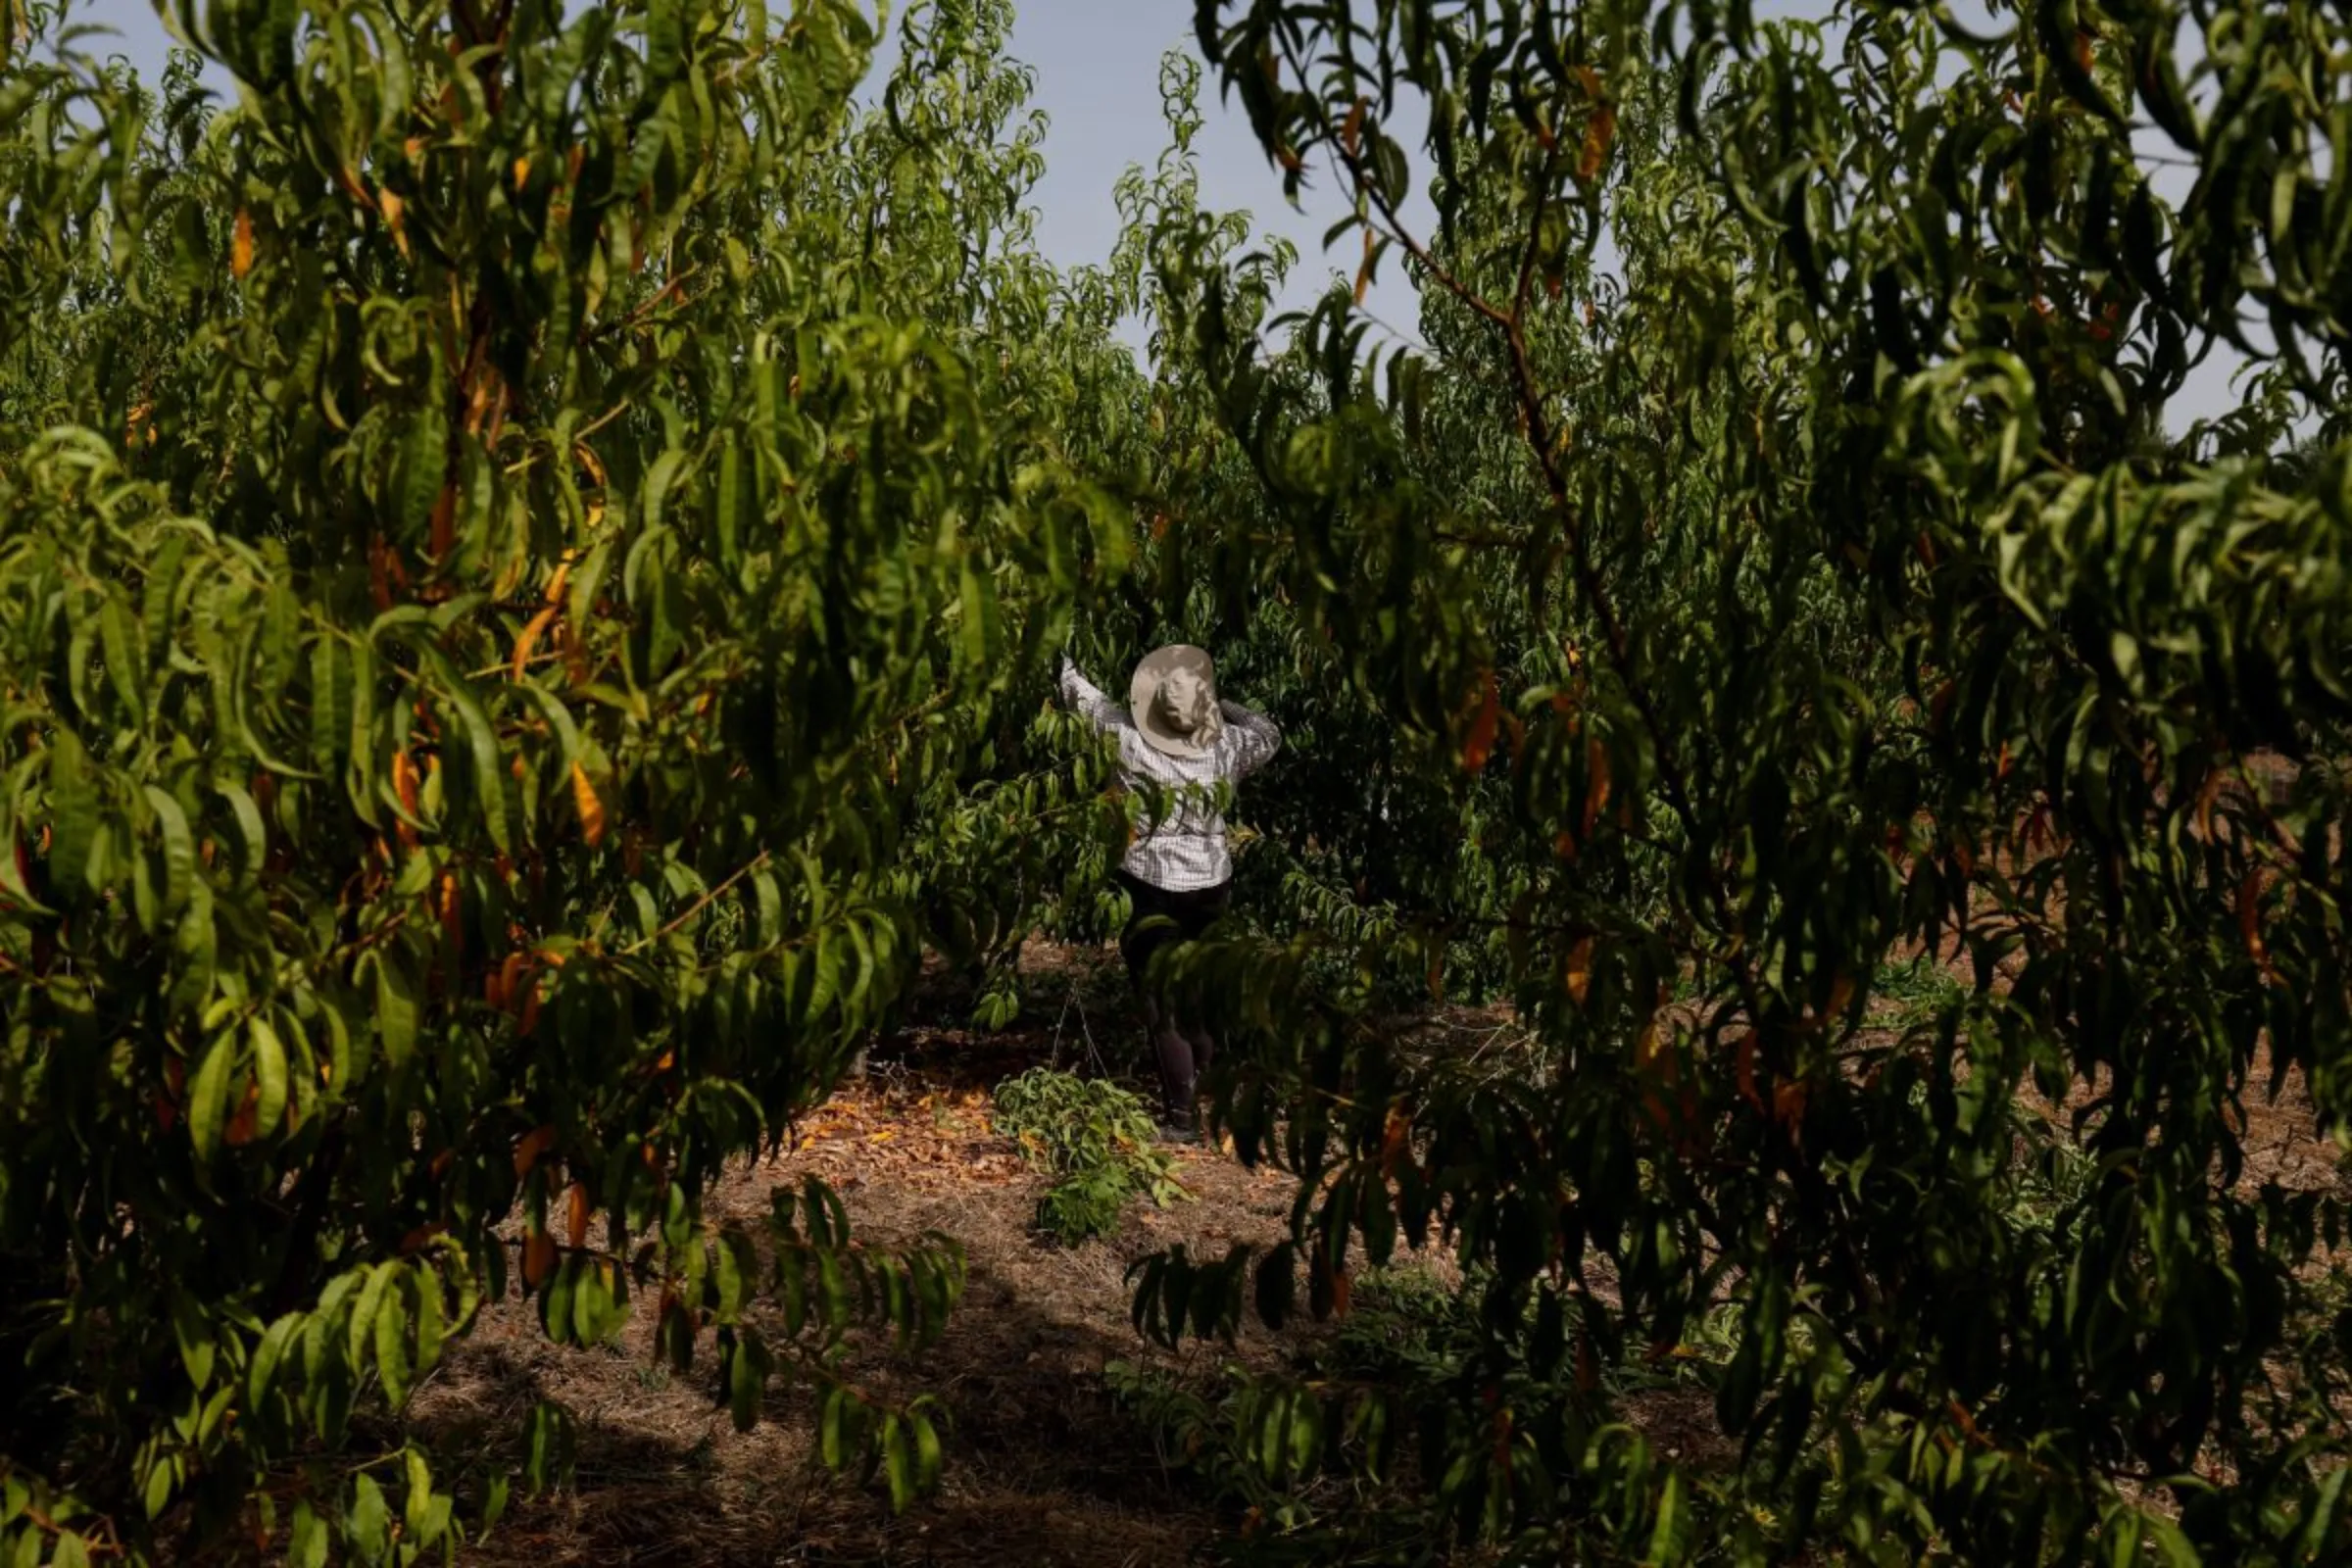 A woman prunes a peach tree on an intensive farm at Alqueva region, Portugal, August 2, 2018